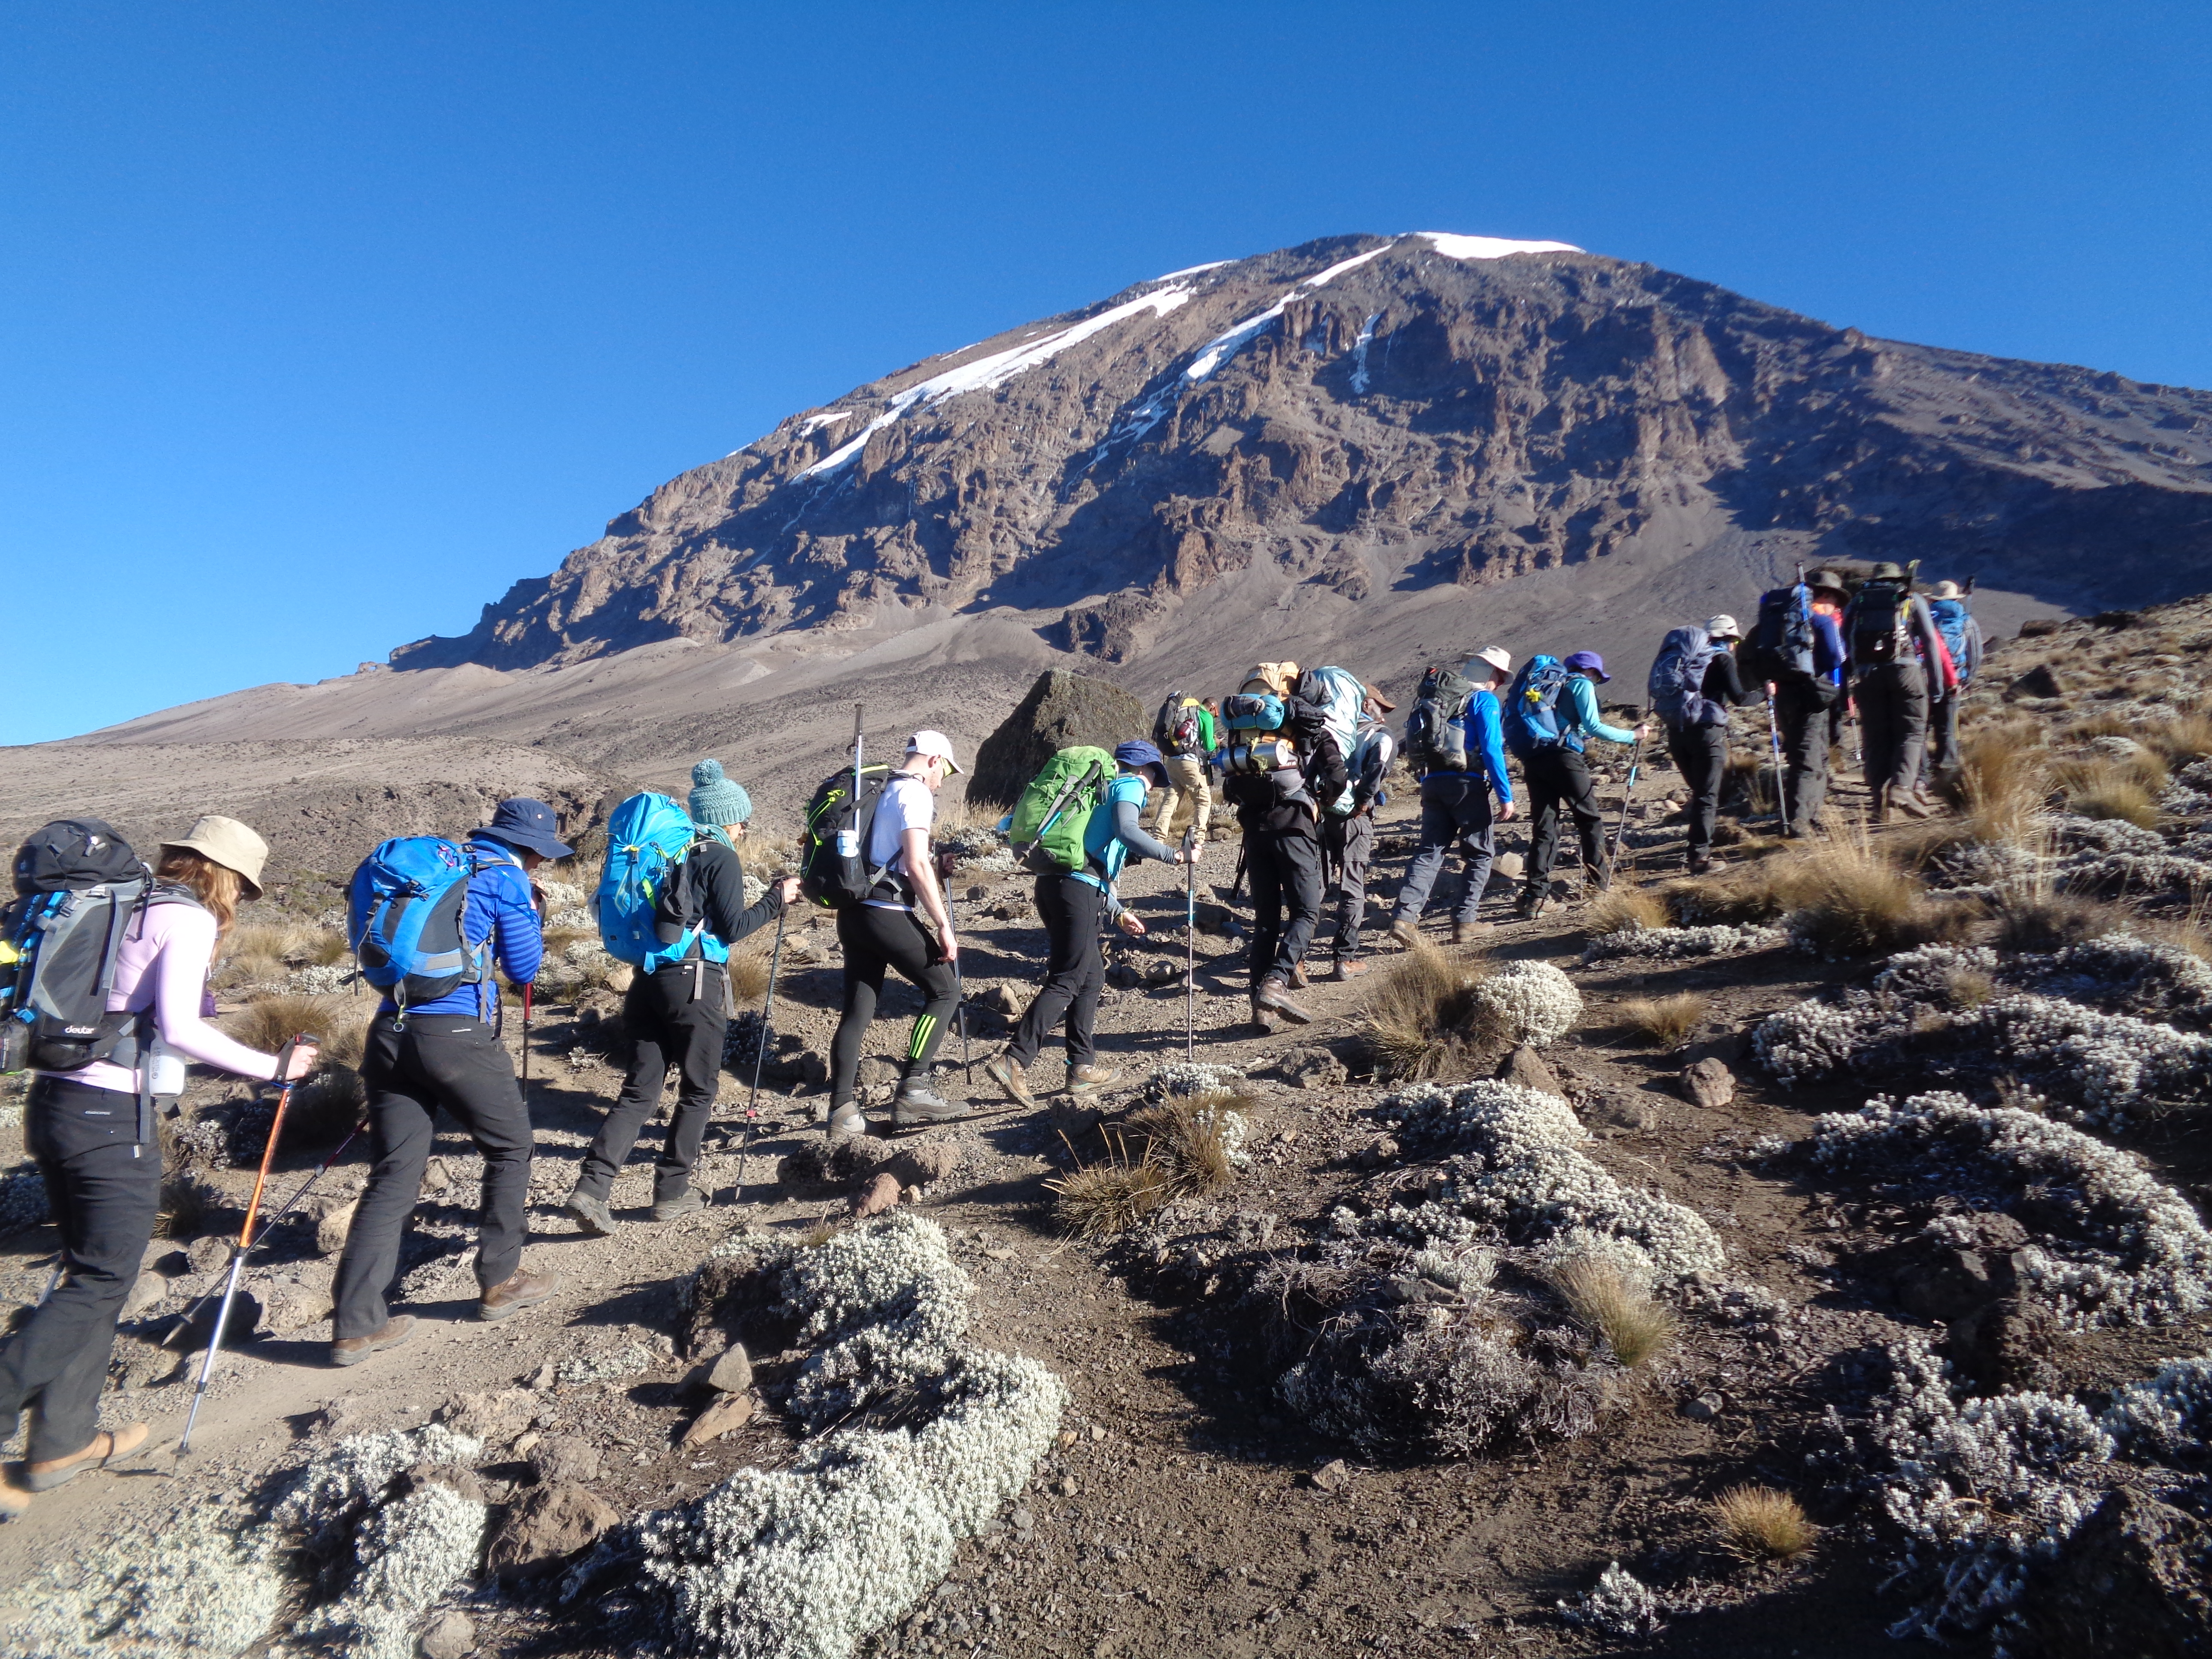 The Lemosho Route Up Kilimanjaro